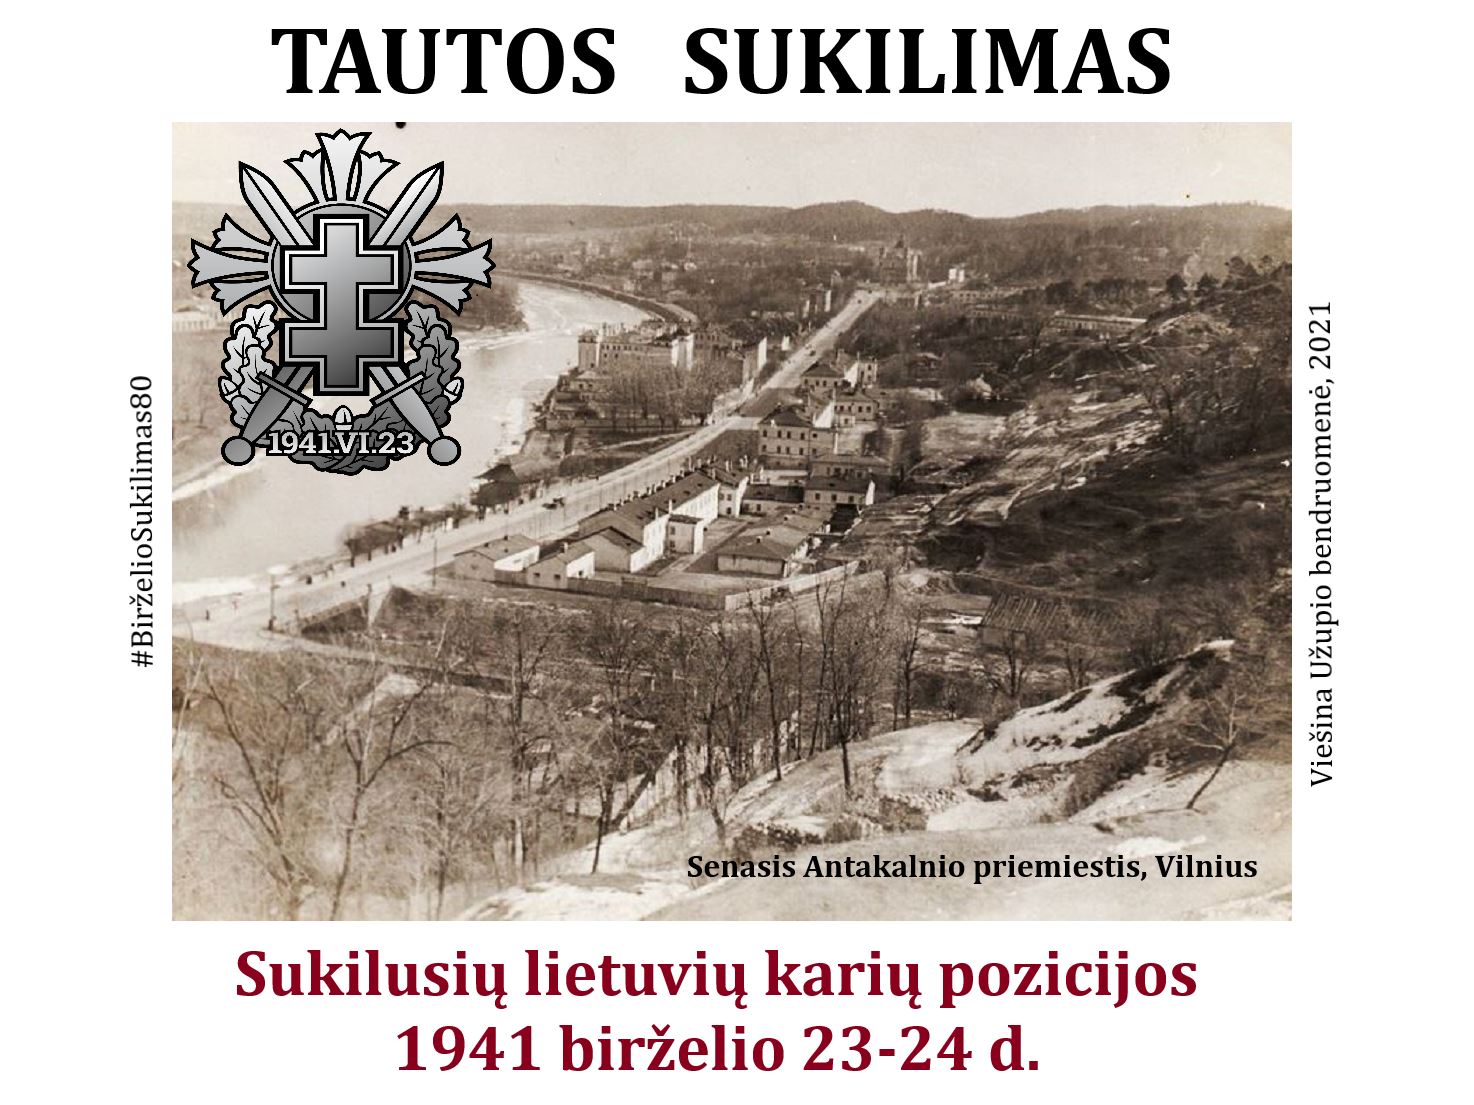 Tautos sukilimas. #BirželioSukilimas80 #Vilnius